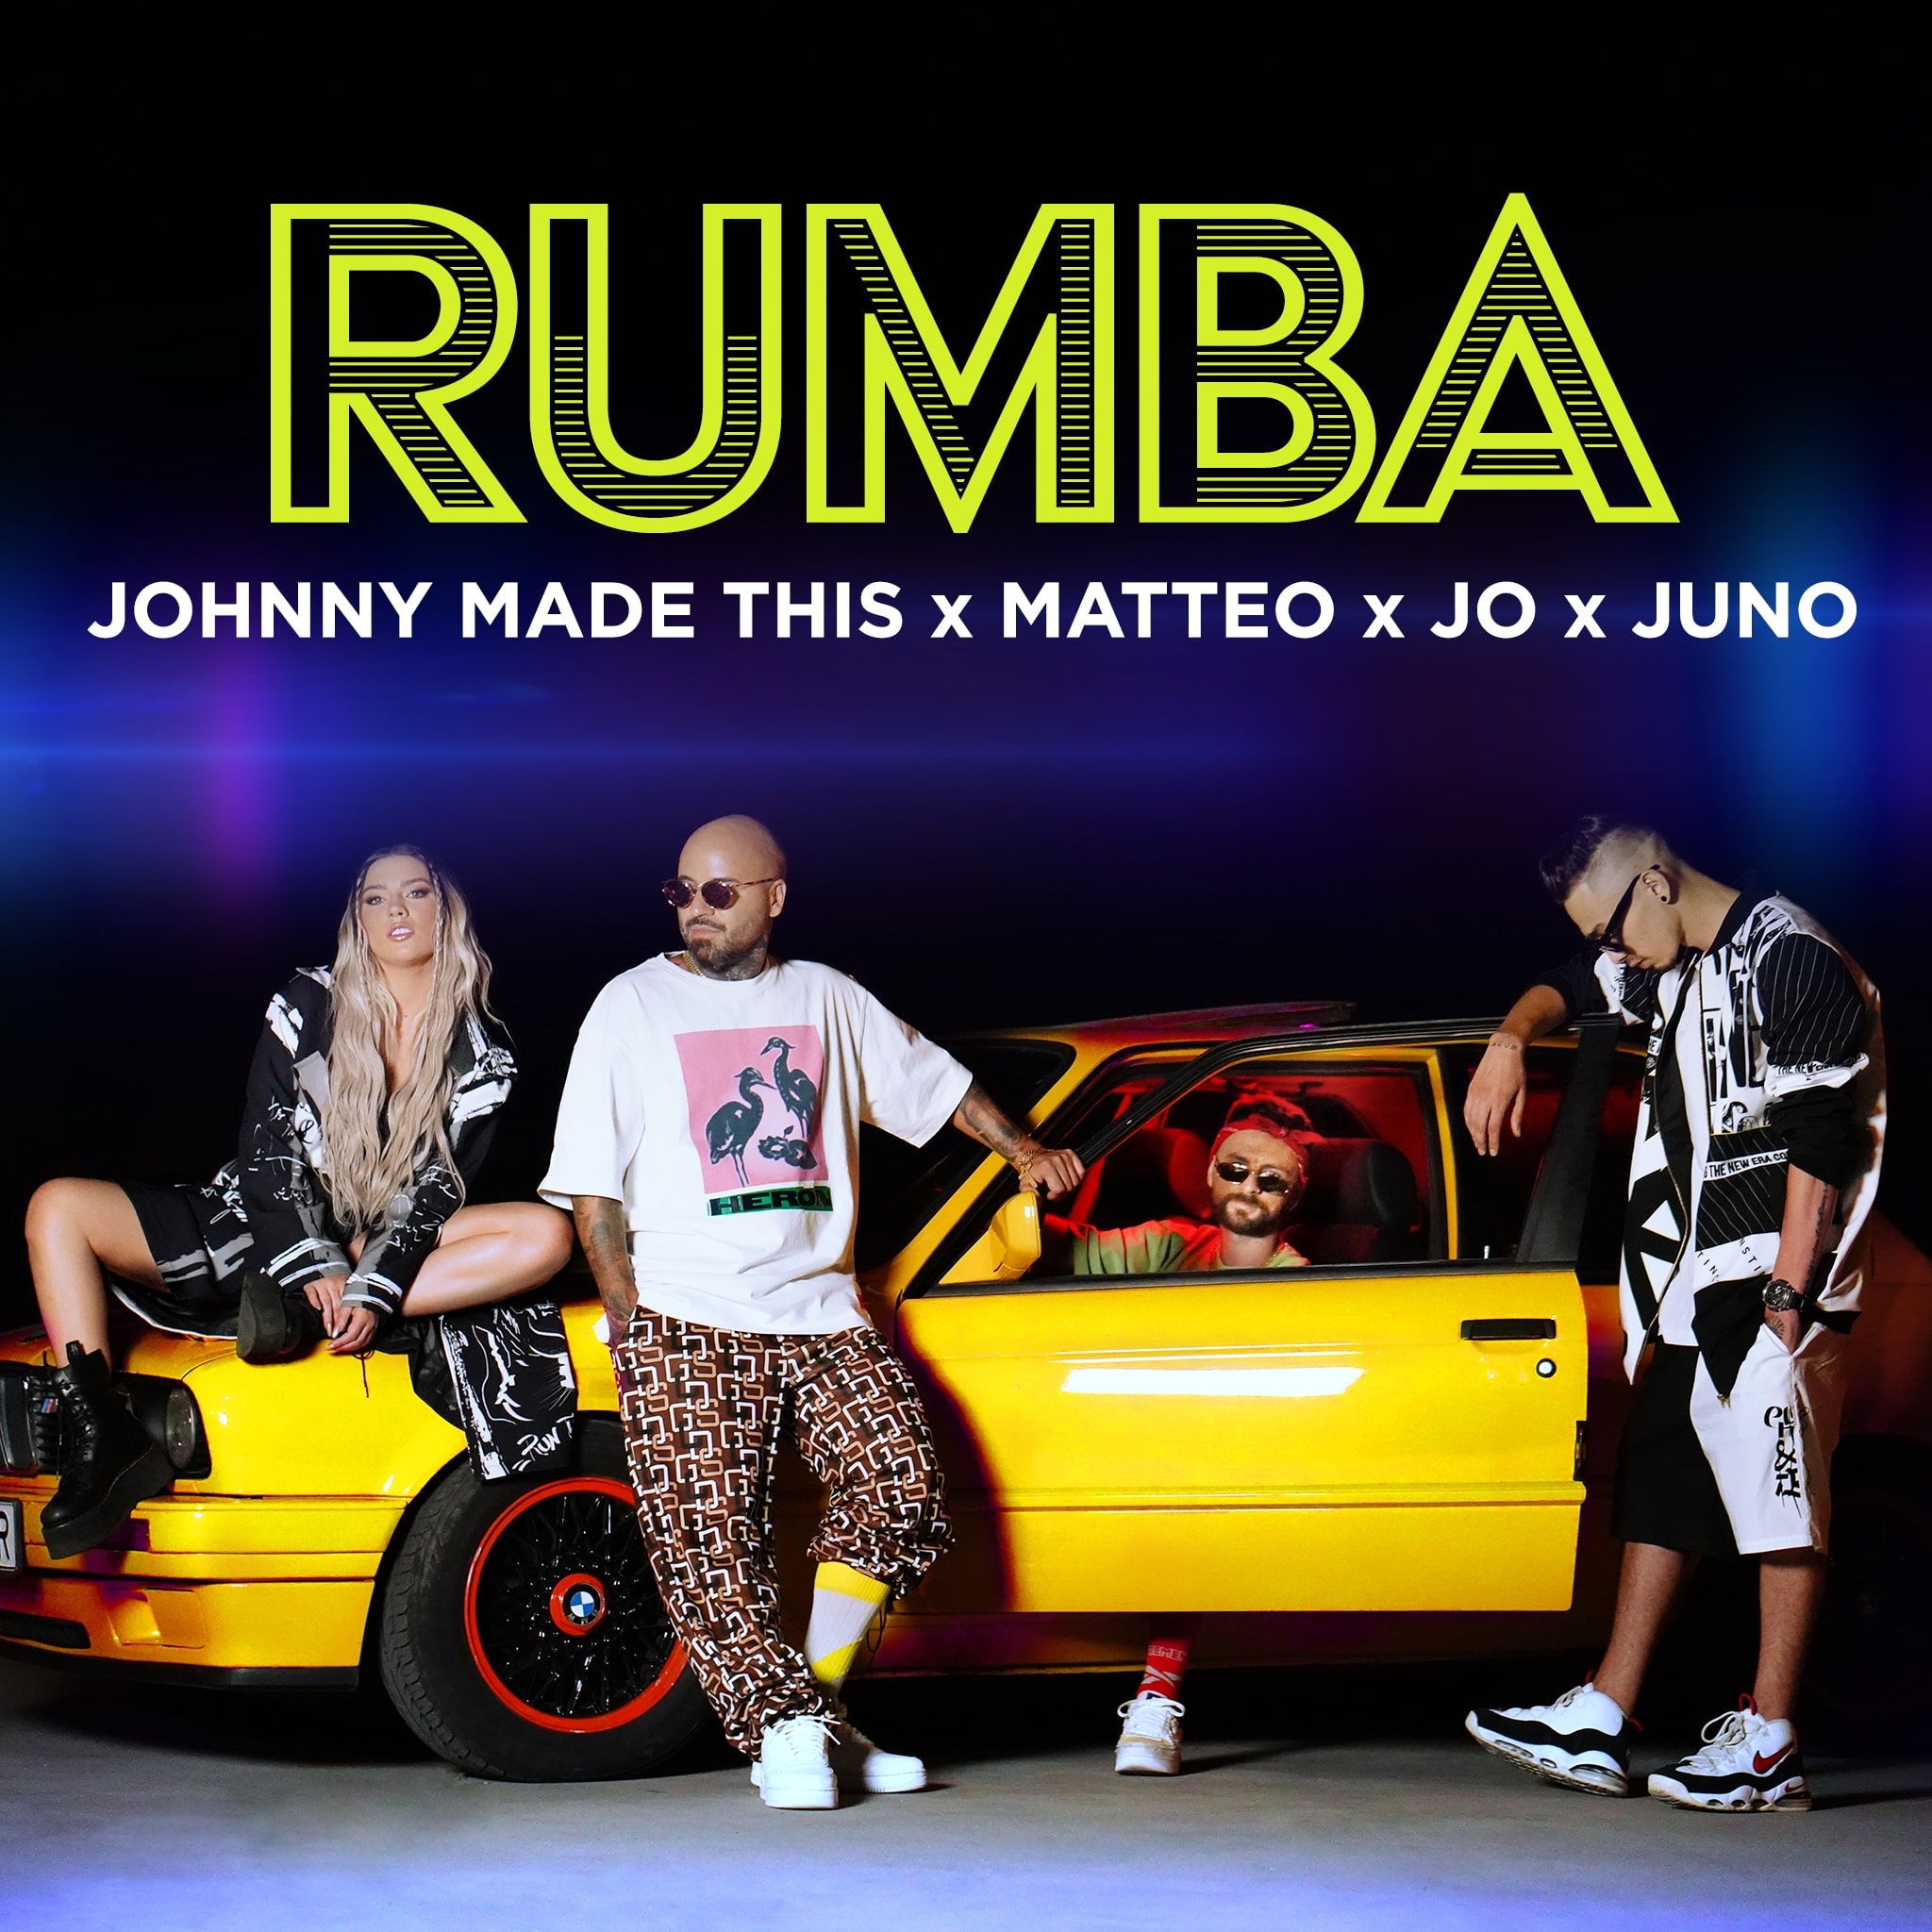 Unde-s mulți, puterea crește! JO, Juno, Matteo și Johnny Made This au lansat Rumba. Sună bine?